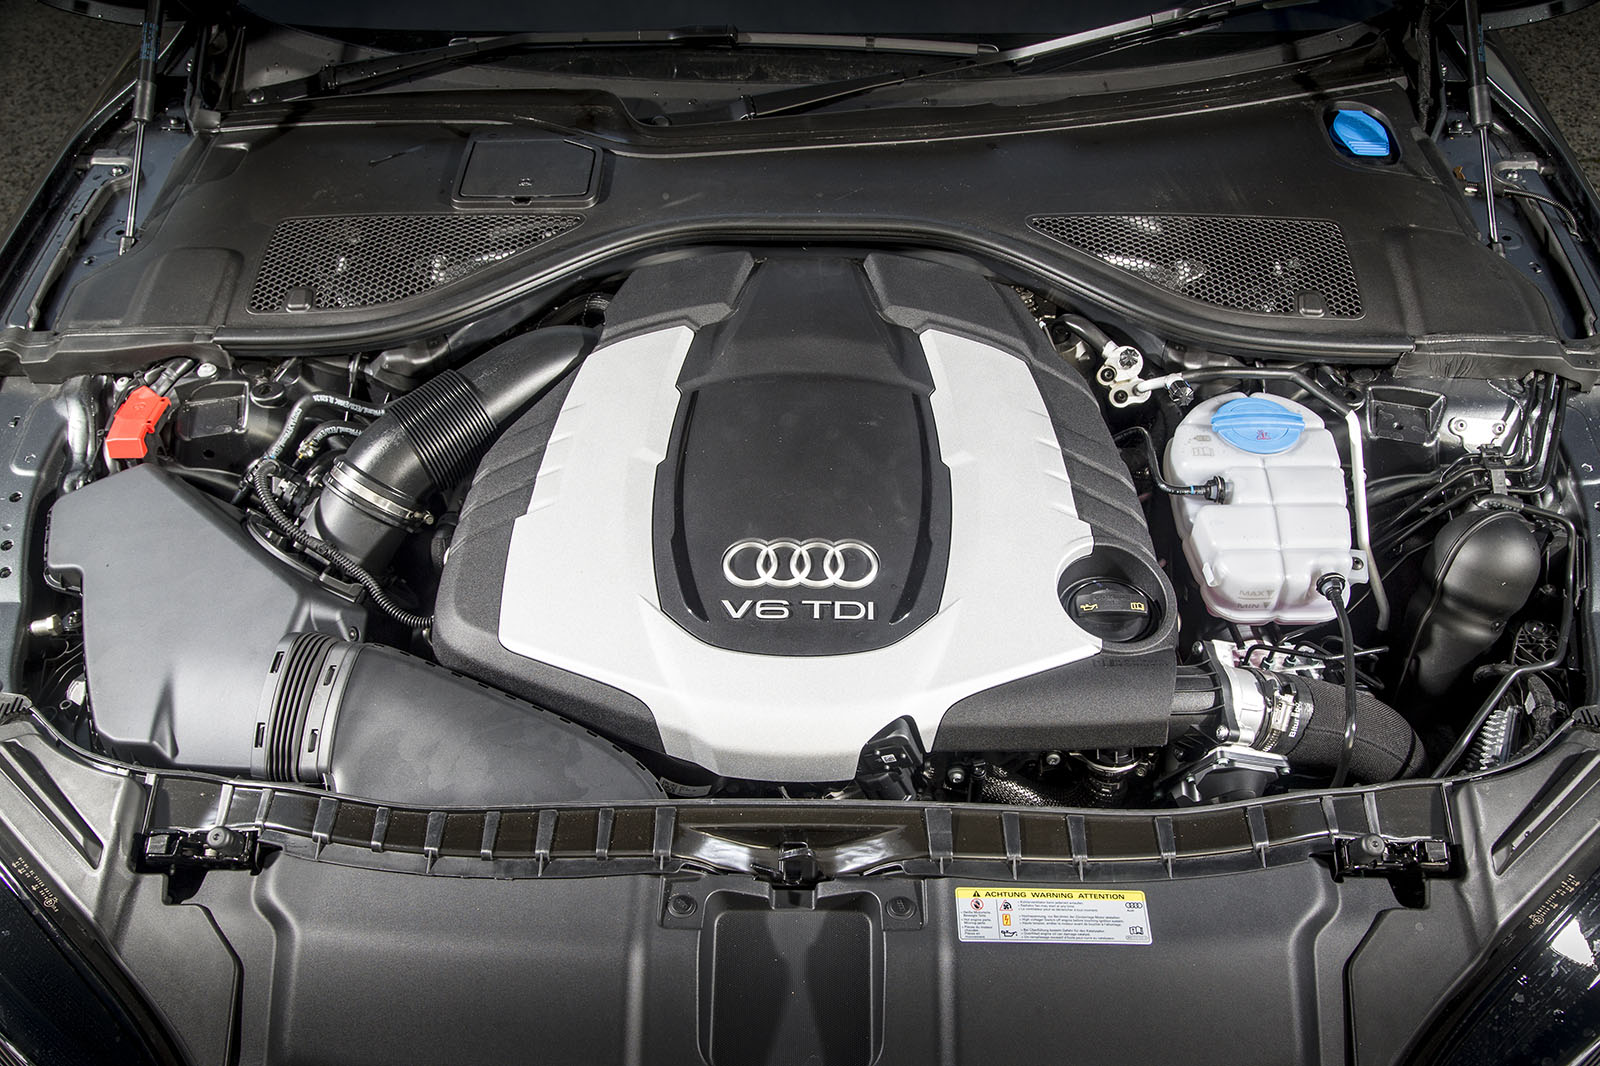 3.0-litre TDI Audi A7 engine